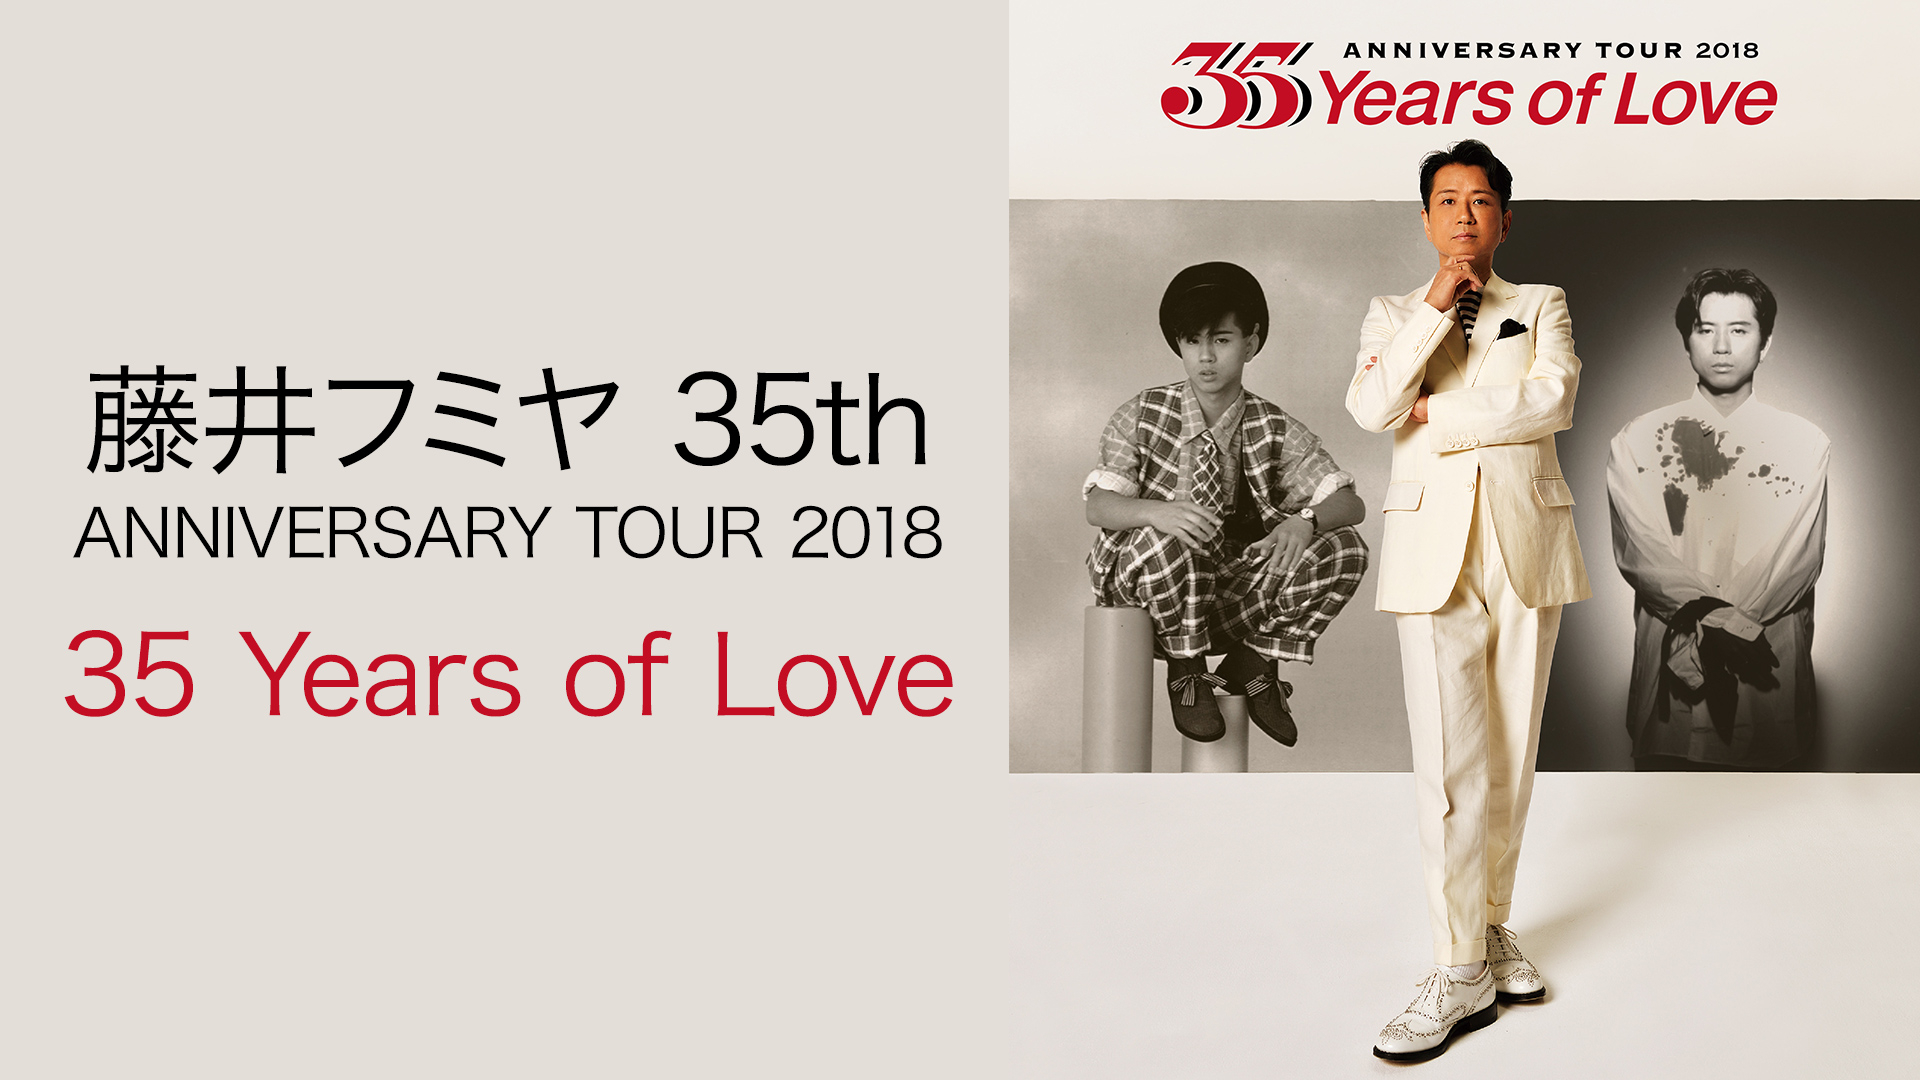 藤井フミヤ 35th ANNIVERSARY TOUR 2018 “35 Years of Love 